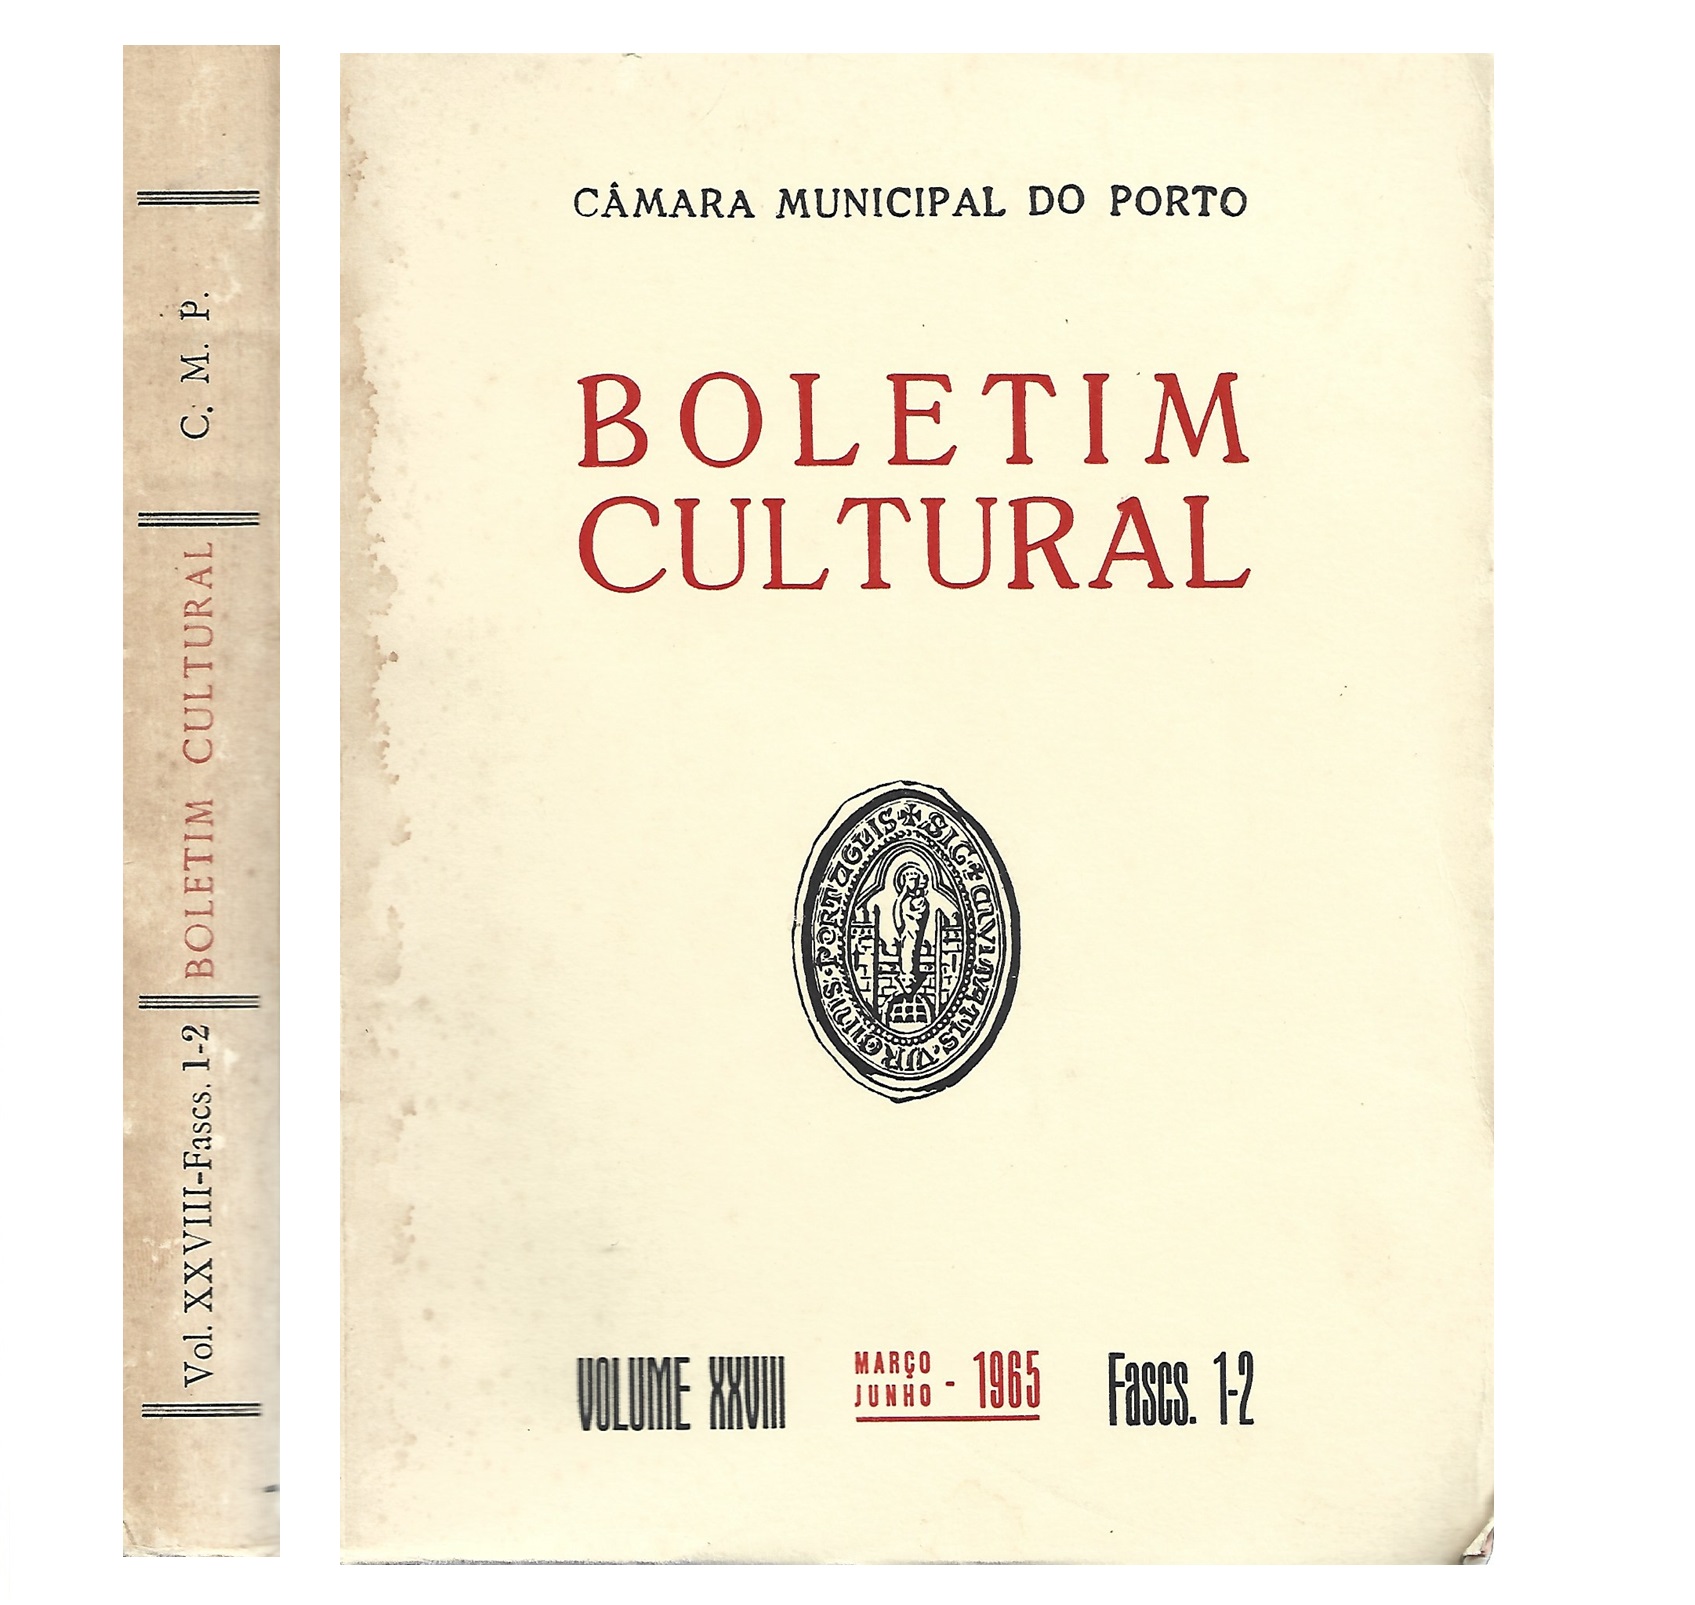 B. C. PORTO VOL. XXVIII, 1965. FASCS. 1-2